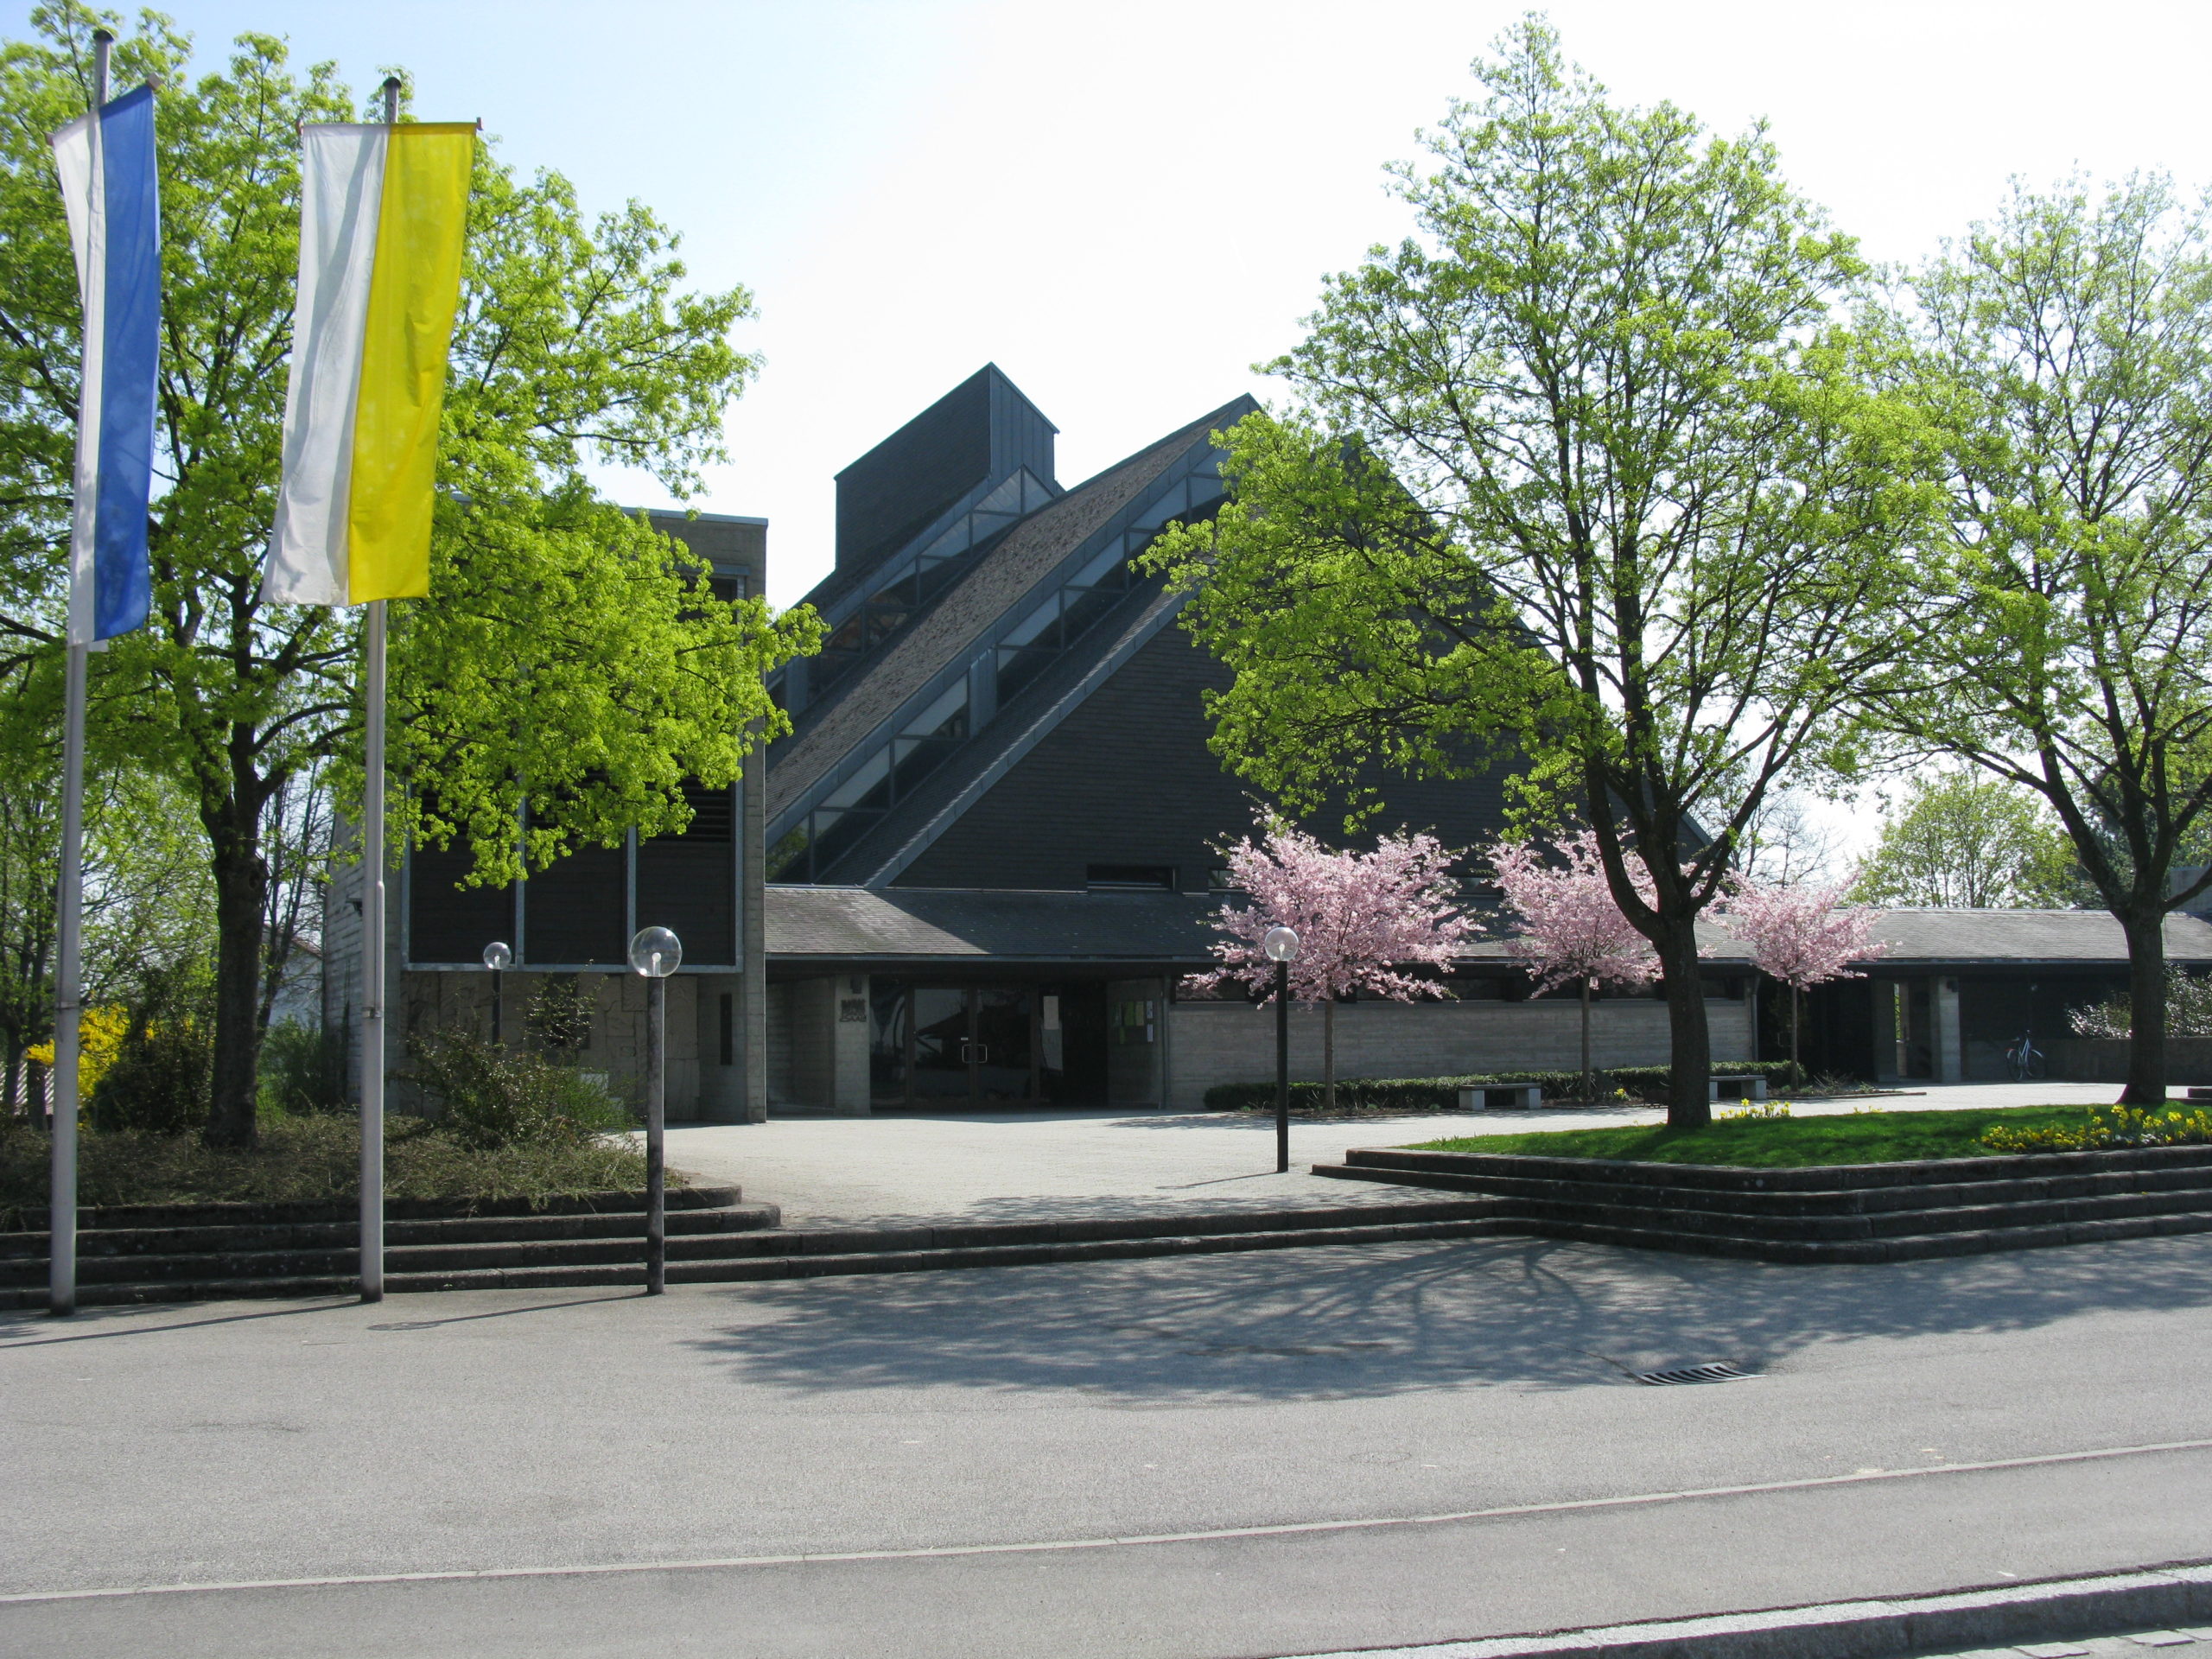 Pfarrkirche Hl. Geist